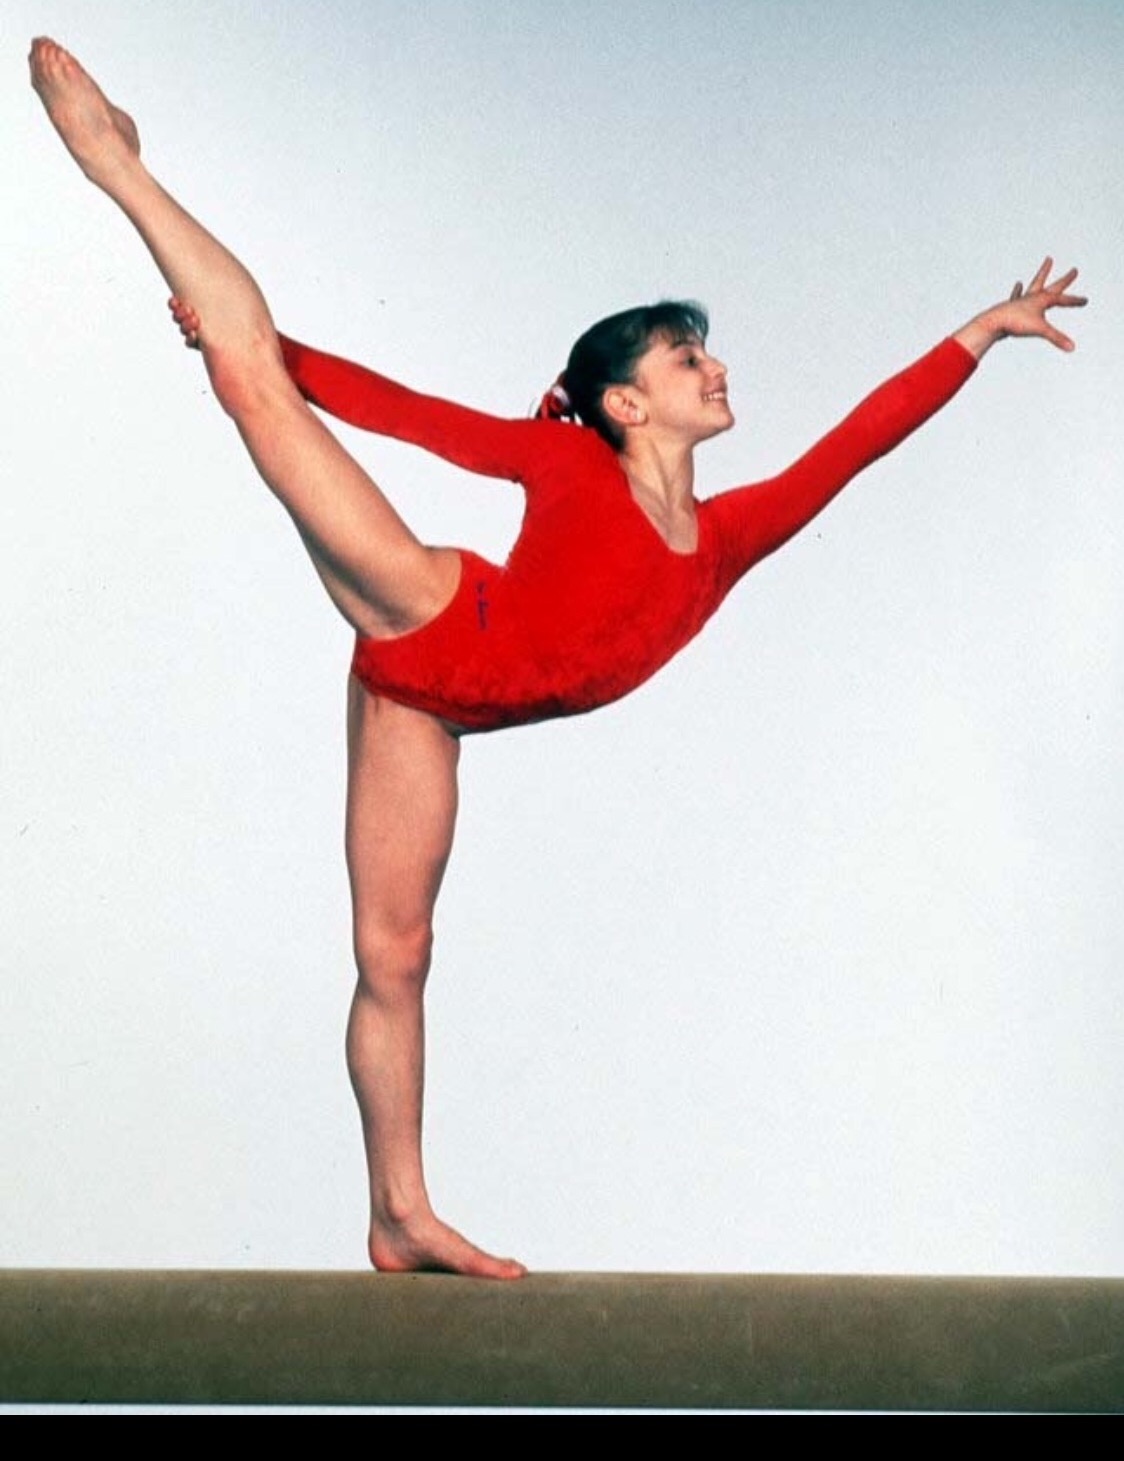 Gymnastics Dominique Moceanu